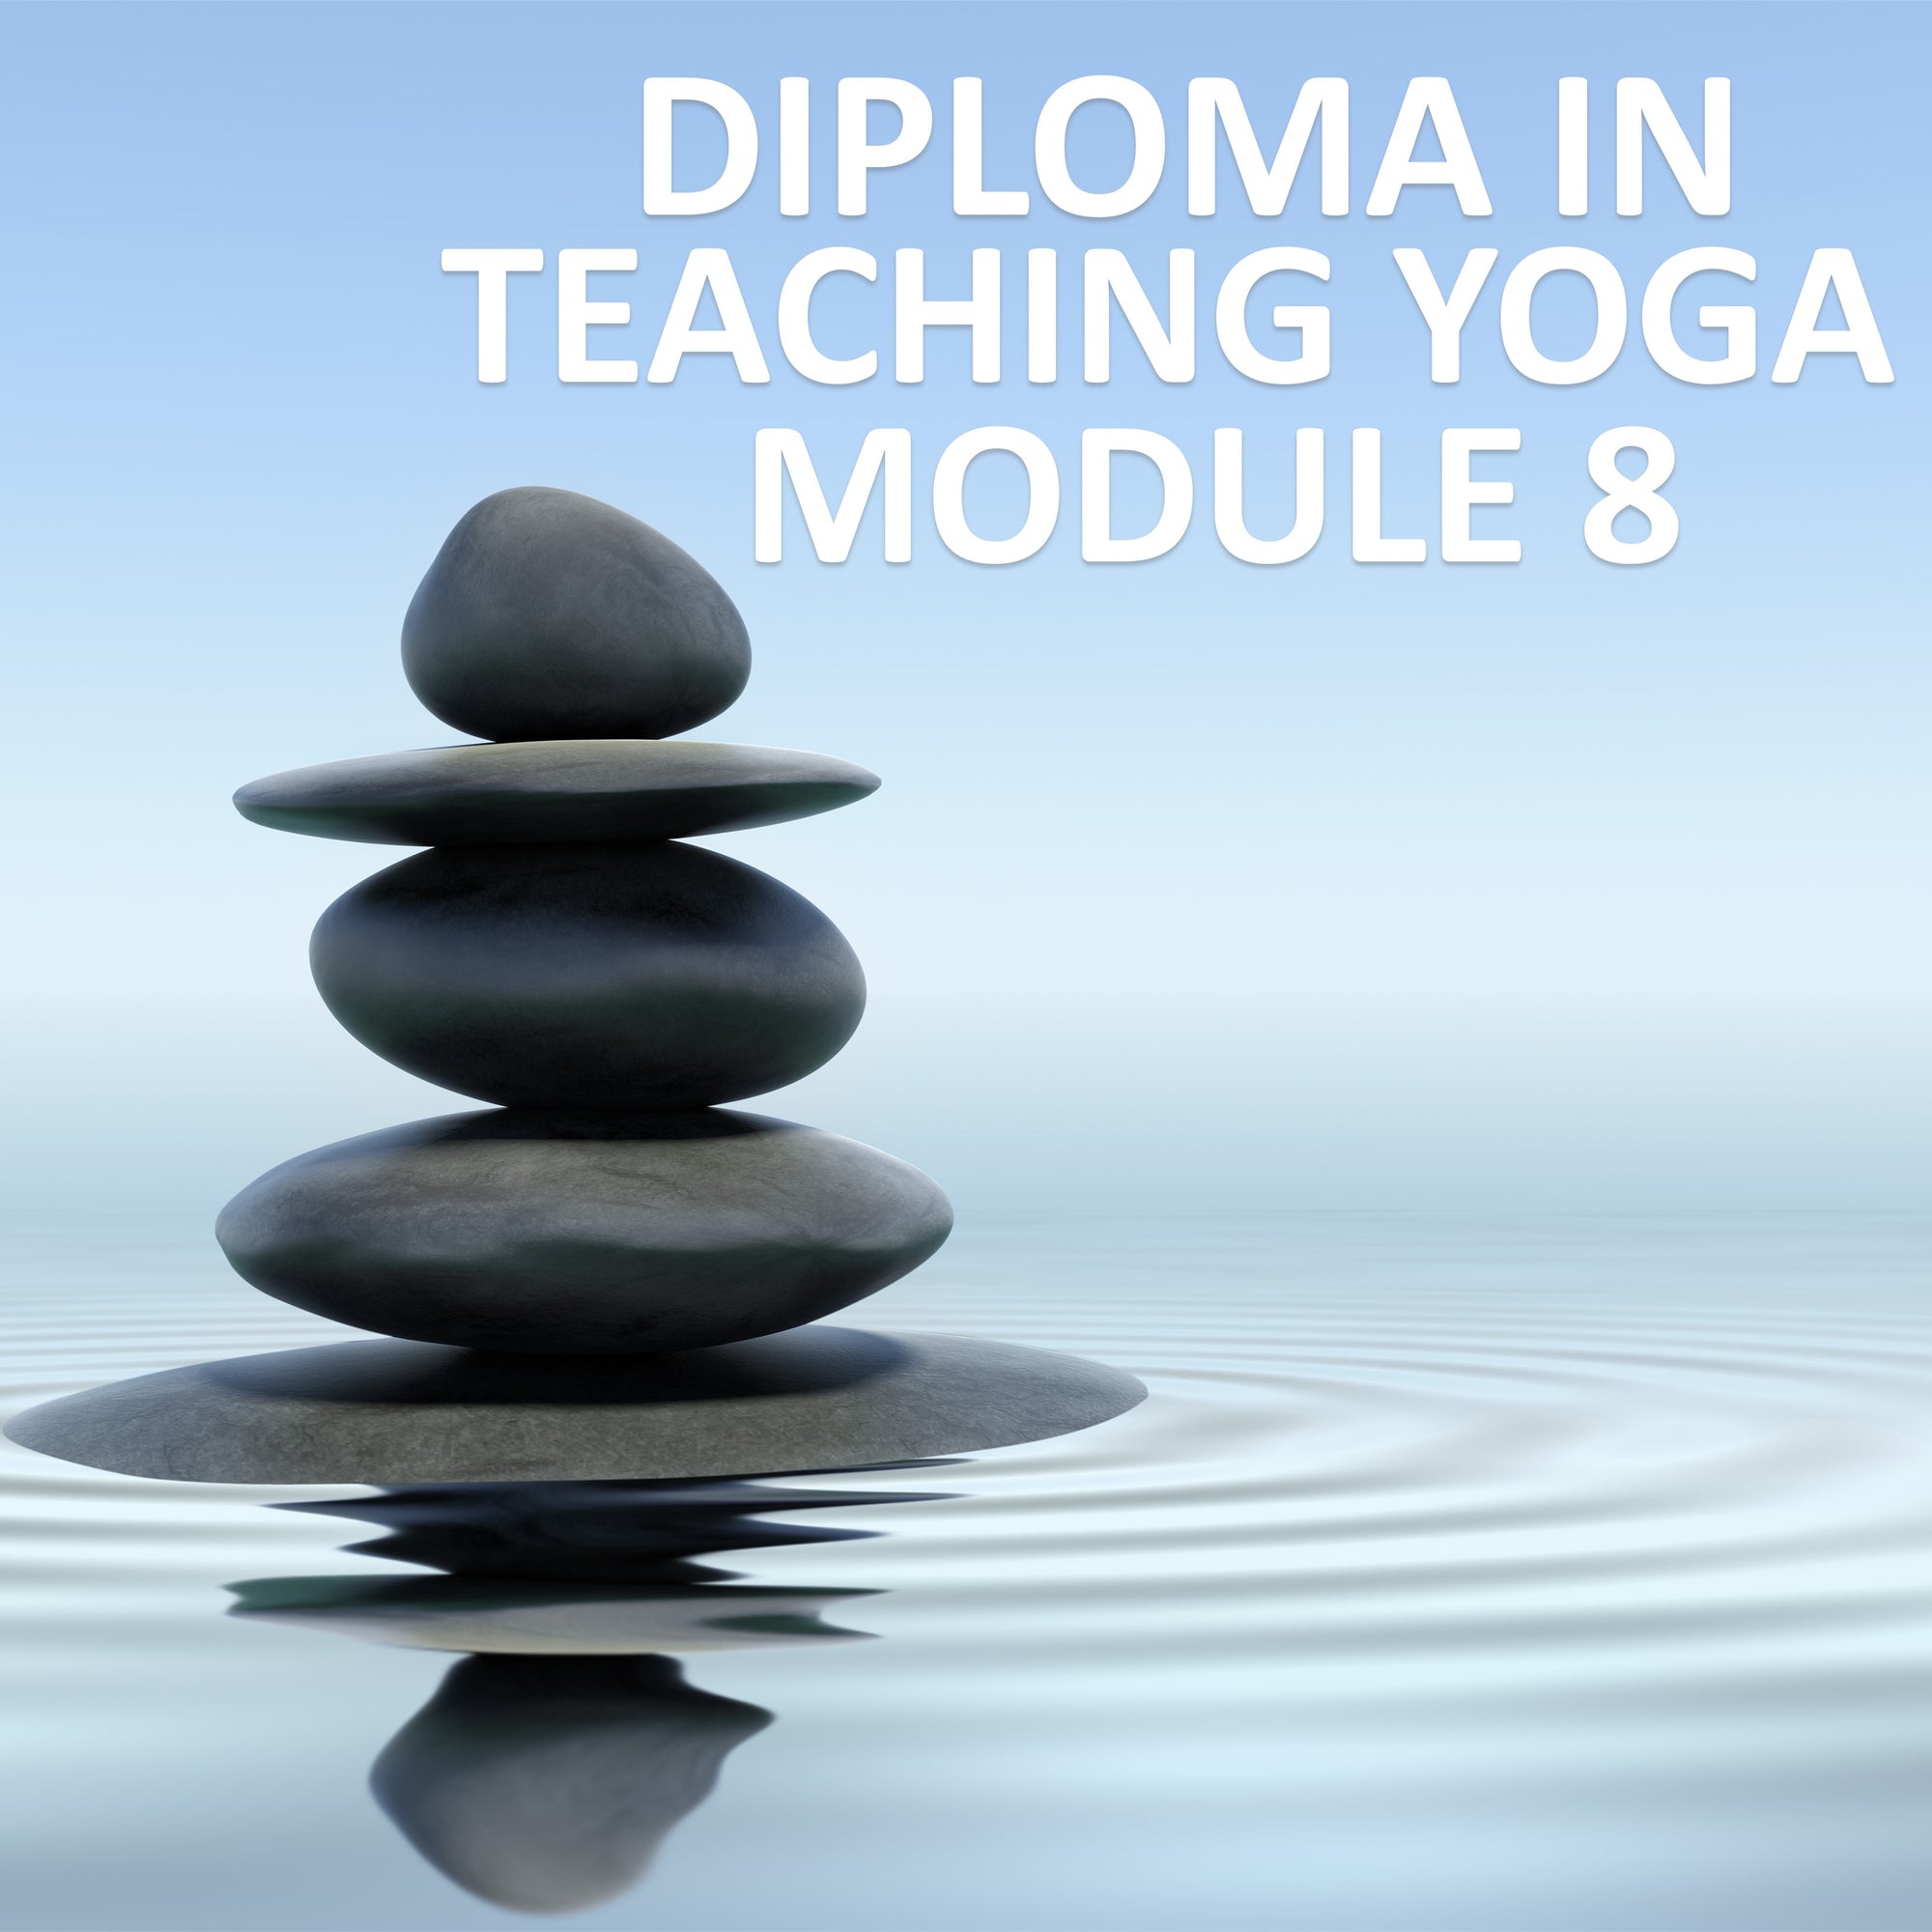 Diploma in Teaching Yoga Module 8